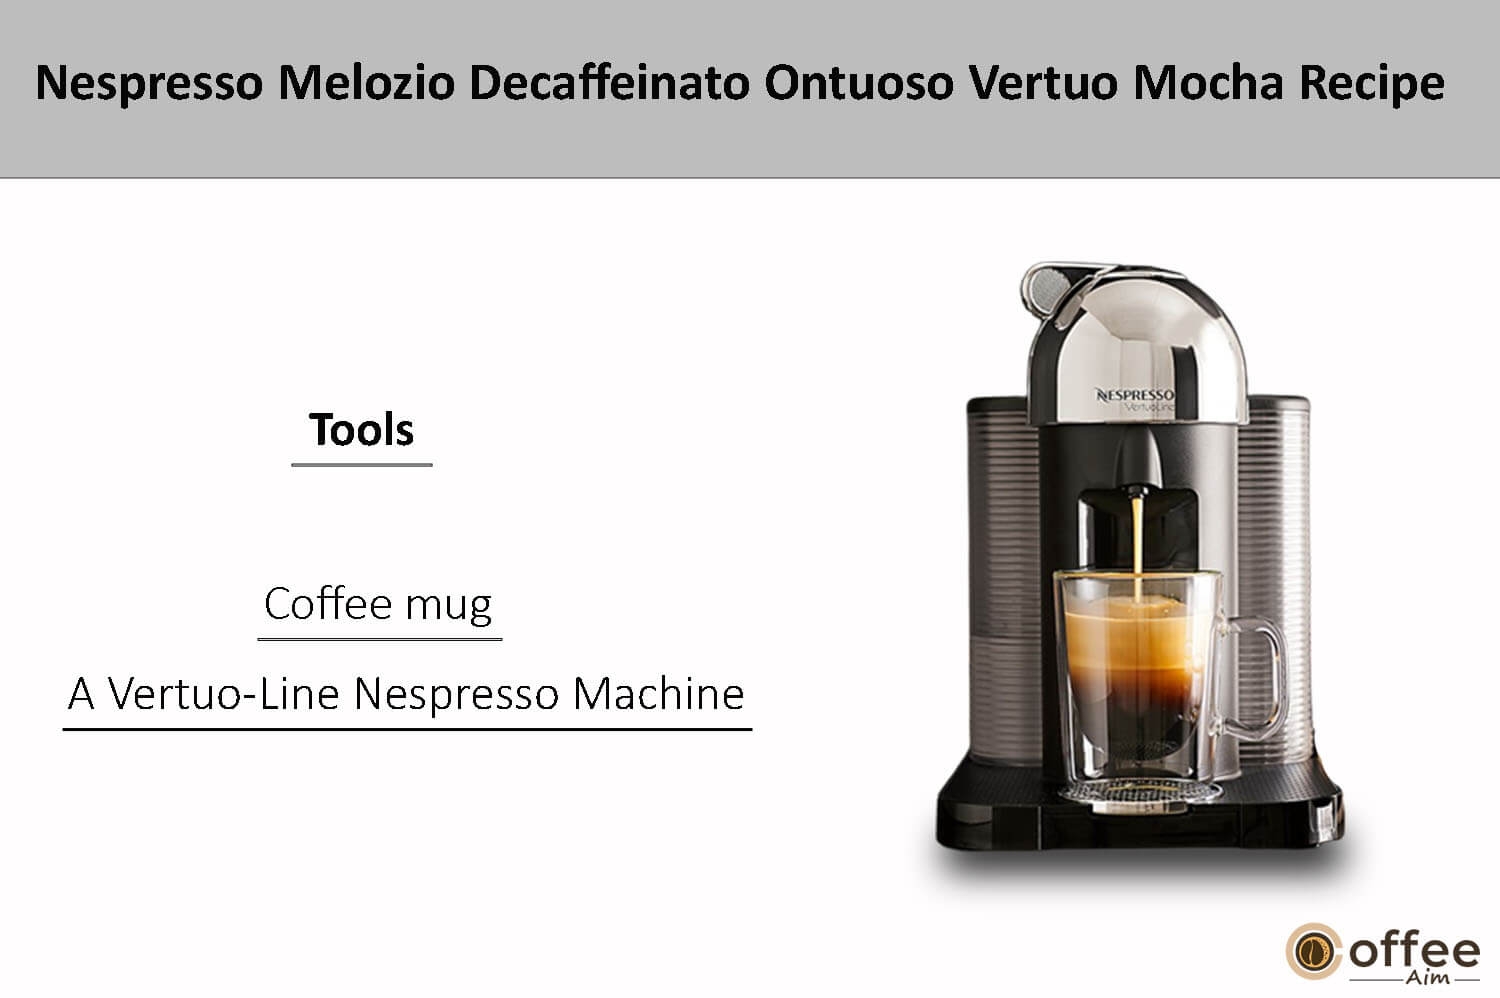 In this image i explain tools nespresso decaffeinato ontuoso Mocha Recipe